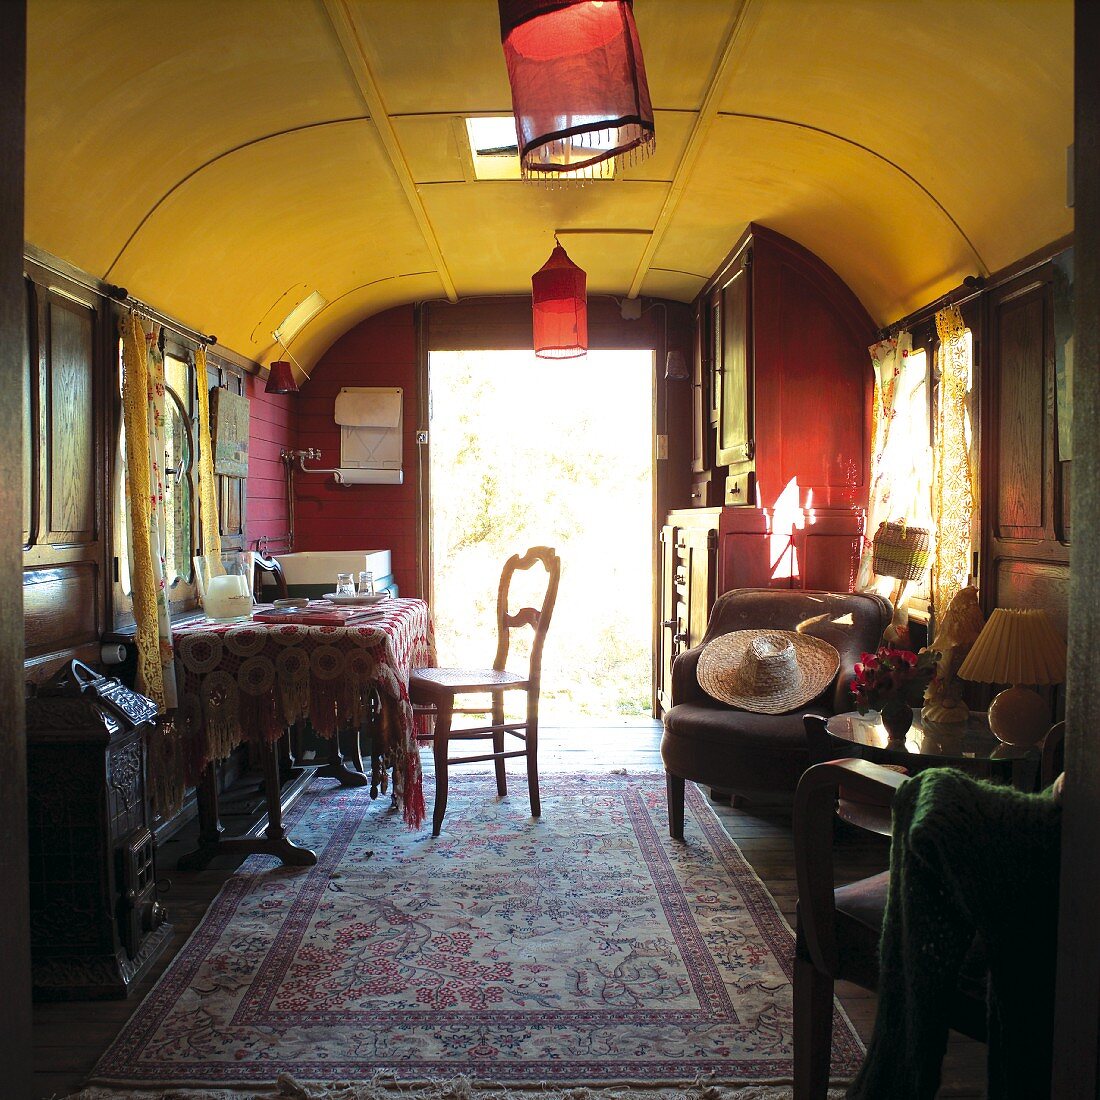 Gemütlicher Wohnraum in umgenutztem Zugwaggon mit Orientteppich und roten Lampions an der gelben Decke